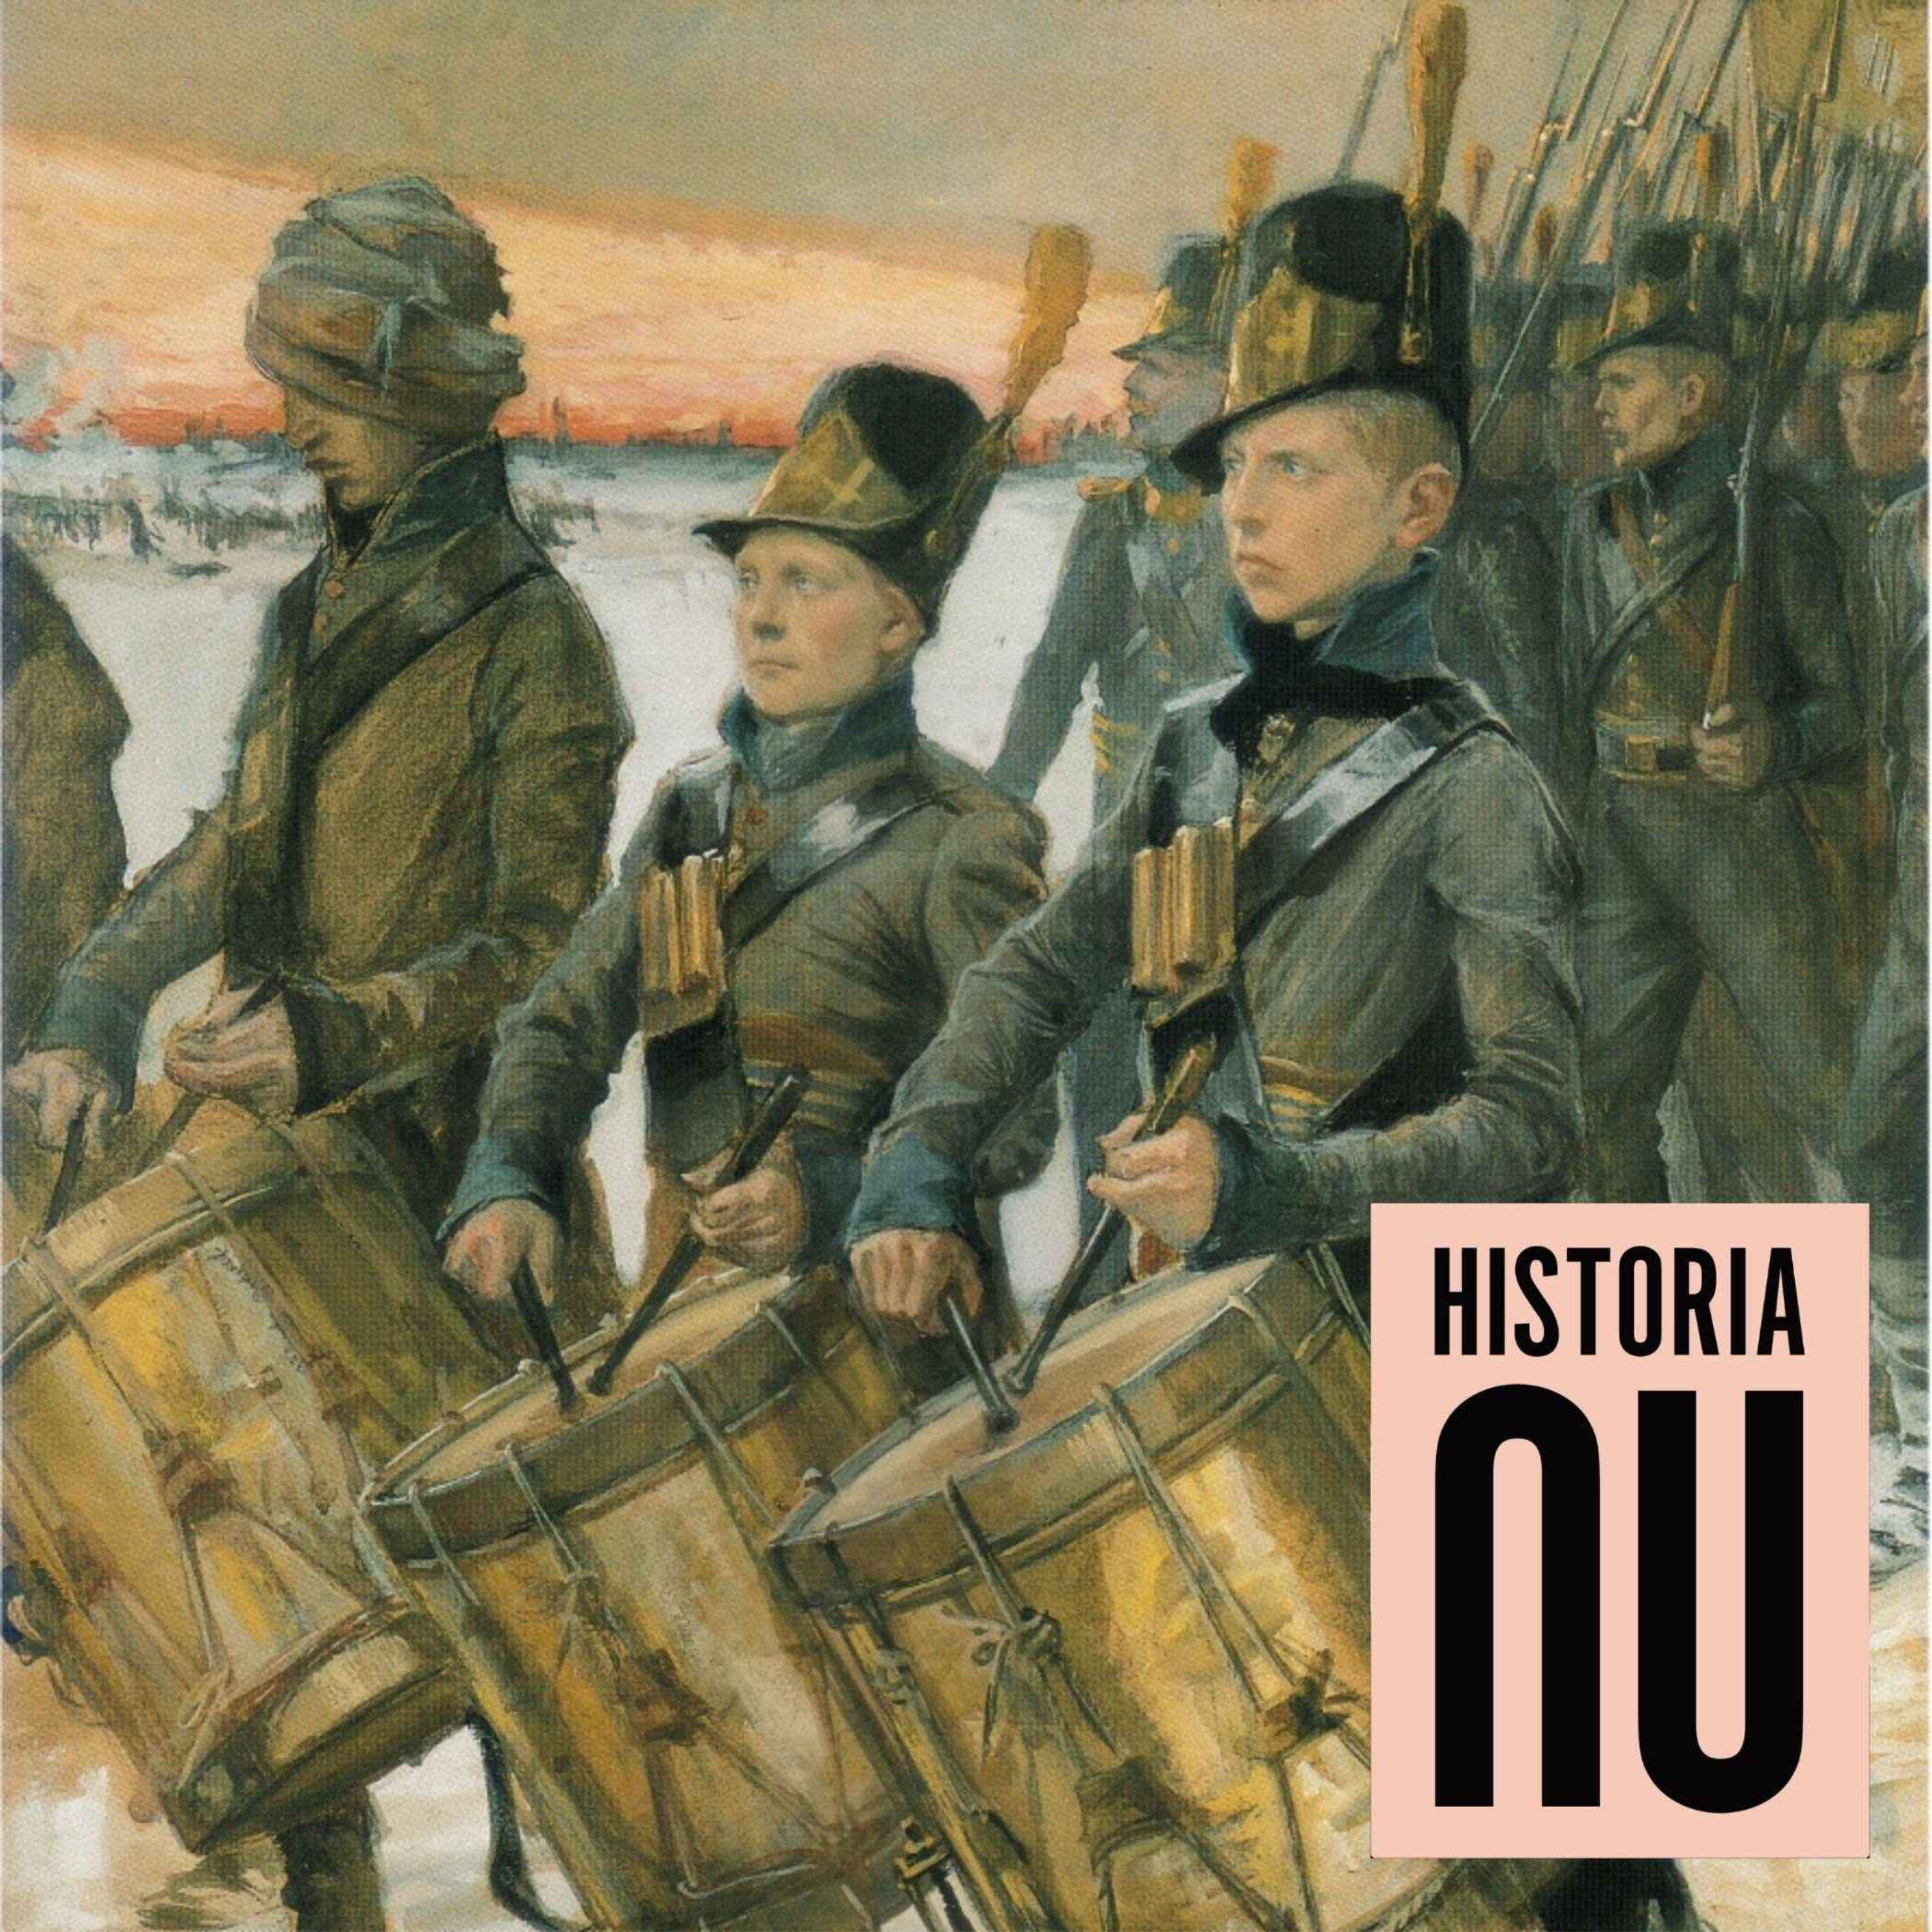 Finska kriget - när Sverige förlorade sin östra rikshalva (nymixad repris)